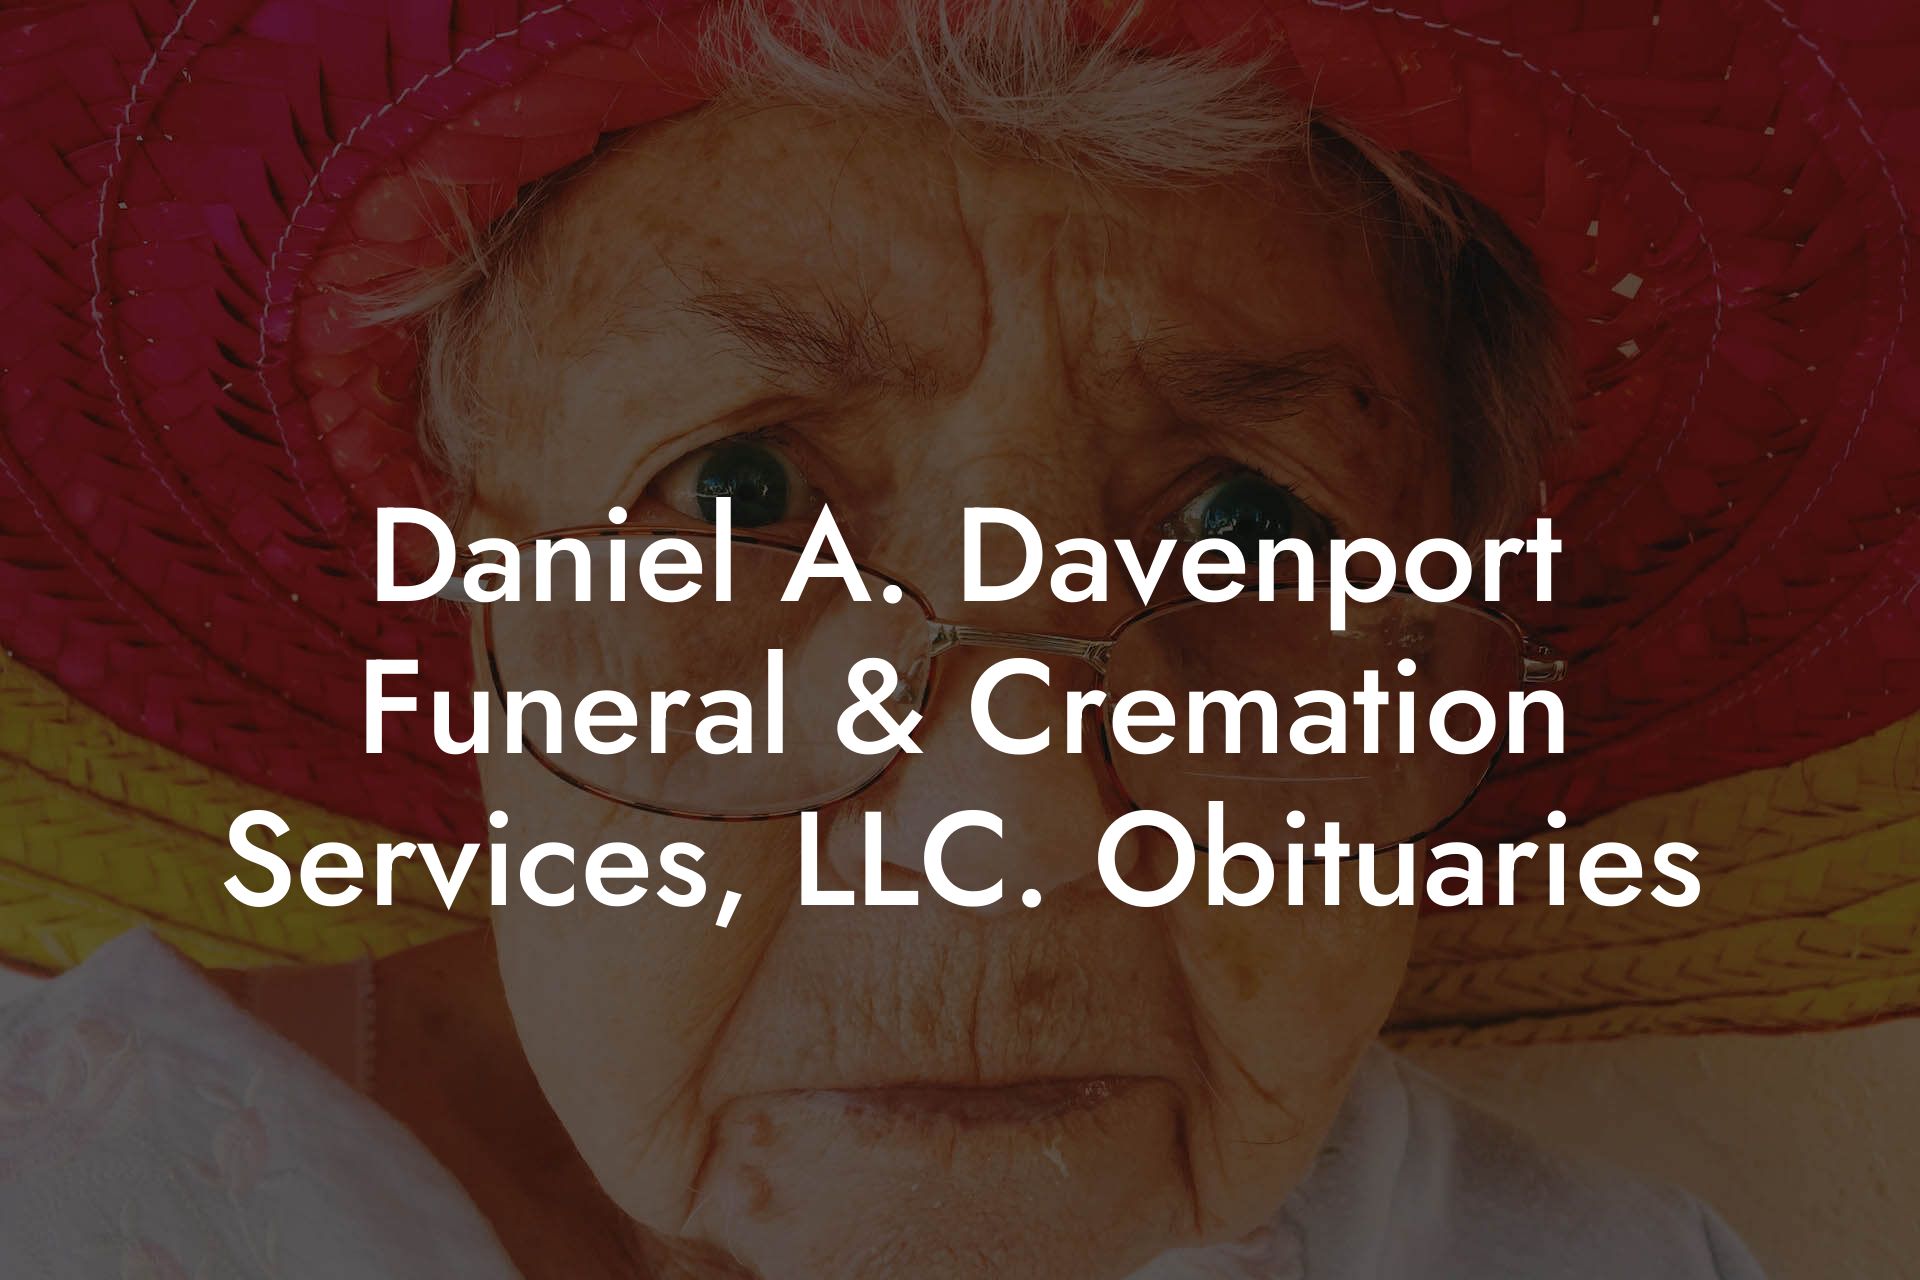 Daniel A. Davenport Funeral & Cremation Services, LLC. Obituaries